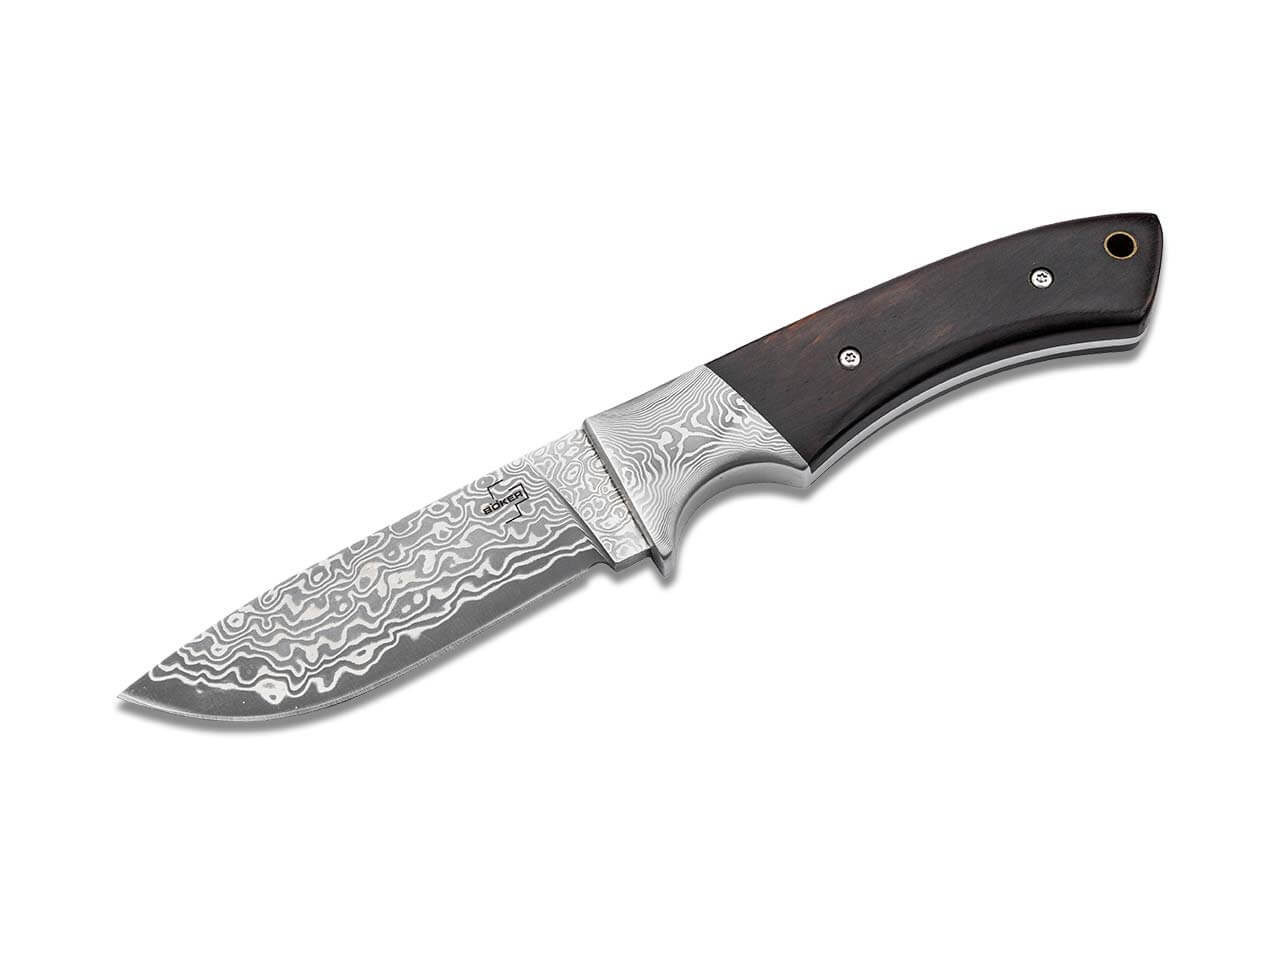 Boker Plus M-One Damast Fixed Knife Ebony Wood, Damascus Blade